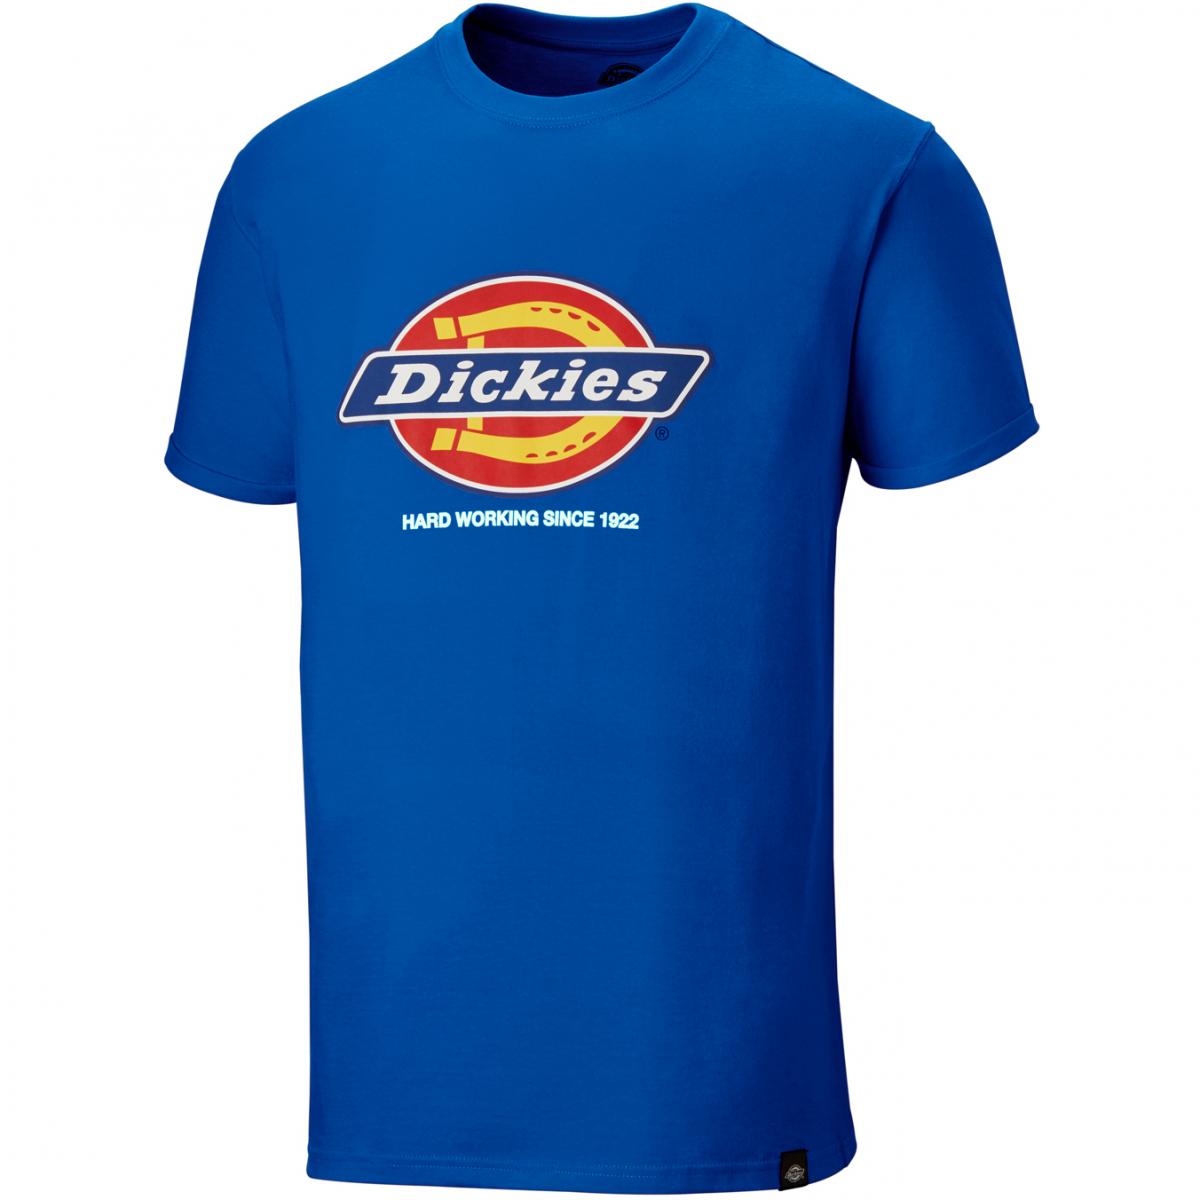 Hersteller: Dickies Herstellernummer: DT6010 Artikelbezeichnung: Denison T-Shirt - Dickies Fashion Farbe: Königsblau